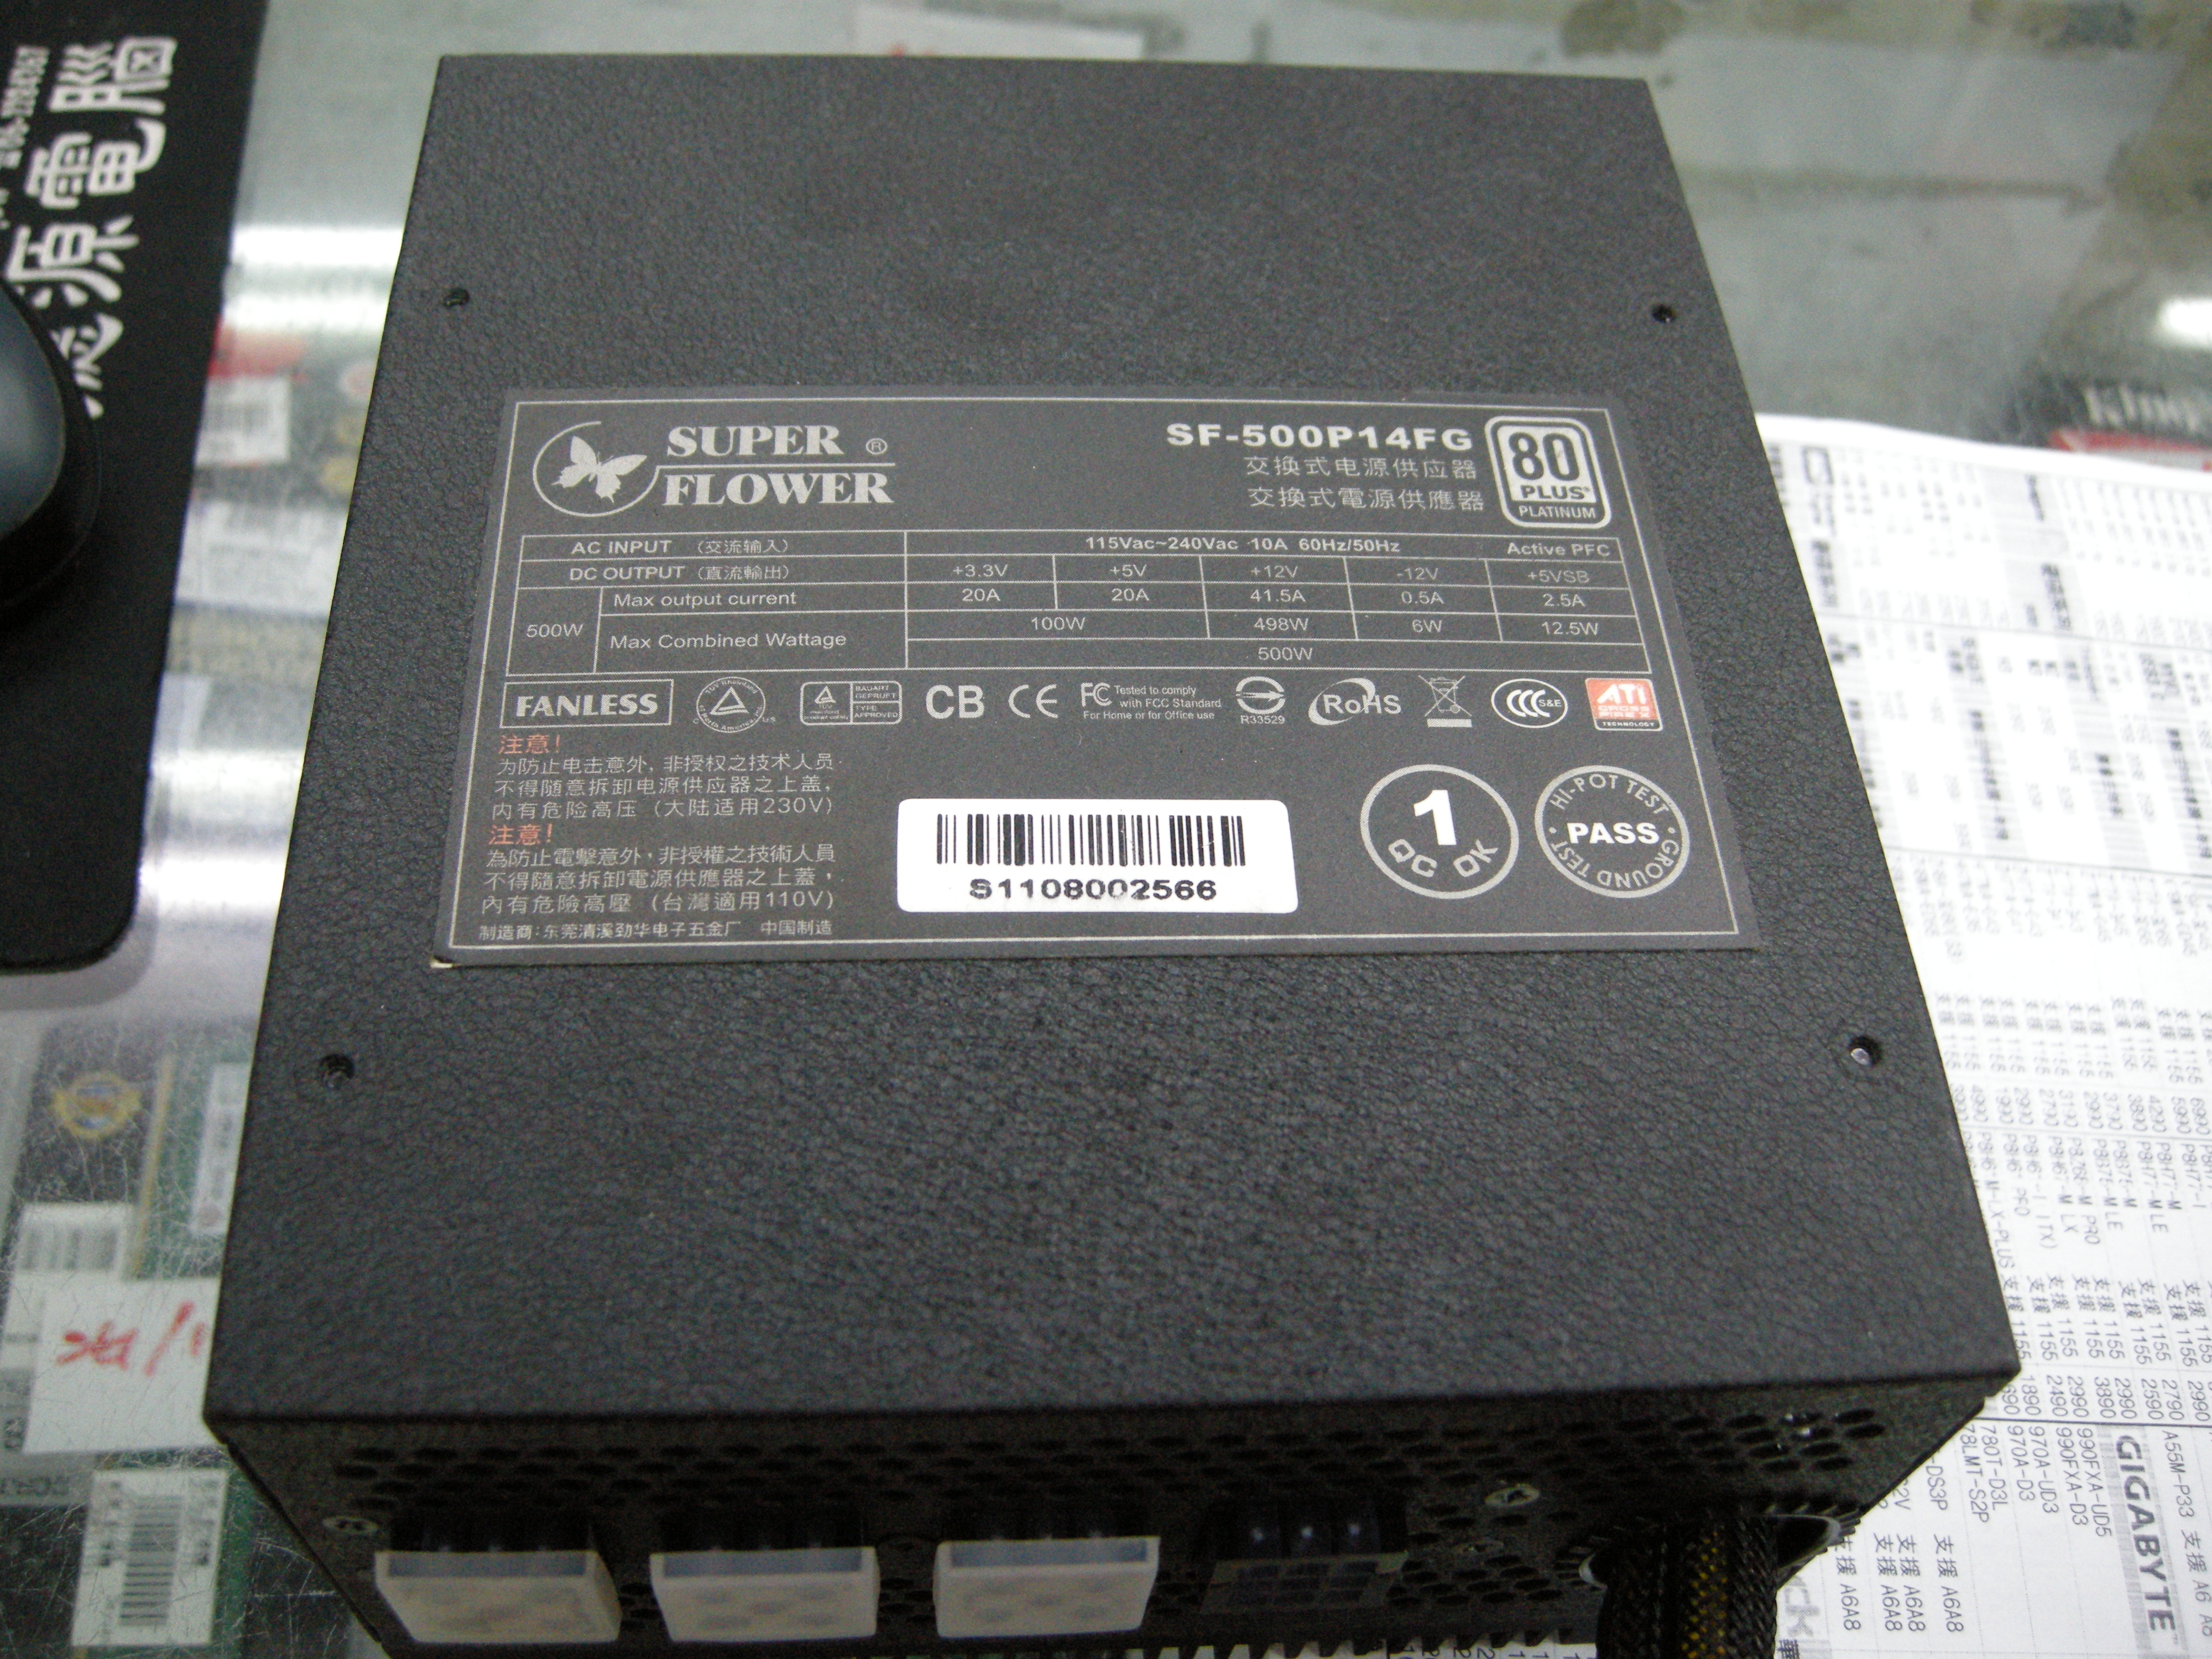 DSCN5221(1).JPG - 4.41 MB